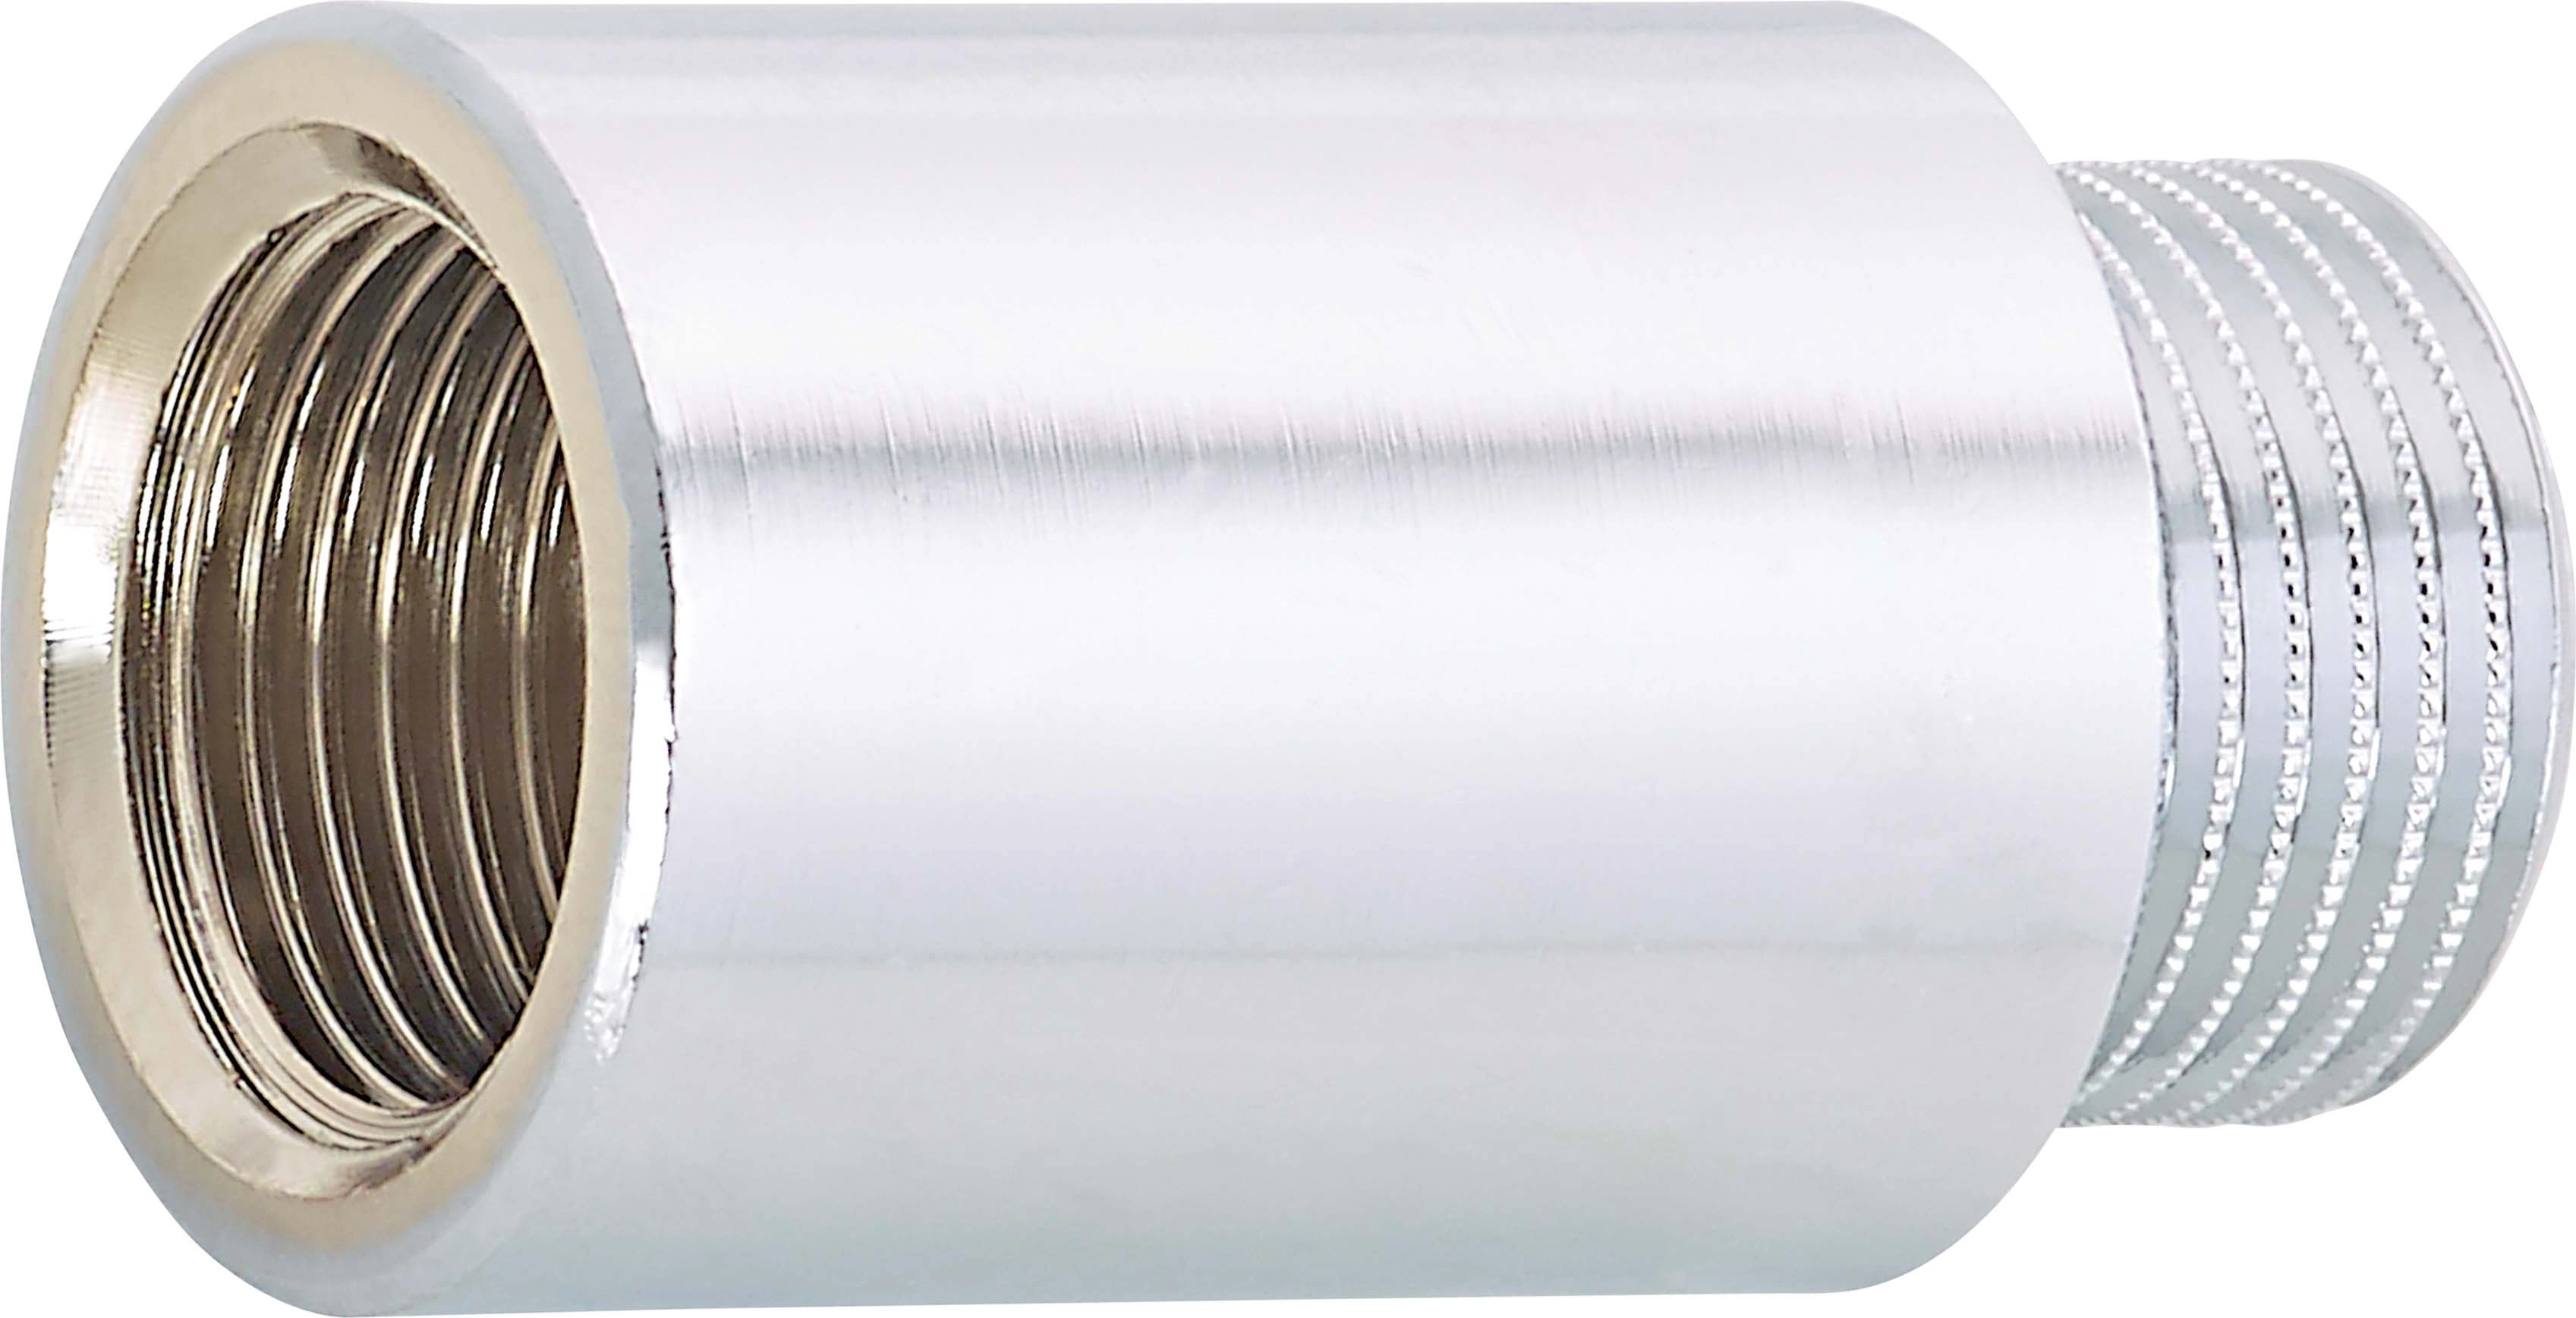 Rallonge de robinet laiton 14,9 mm (Rp 3/8) / 16,7 mm (R 3/8) / 30 mm